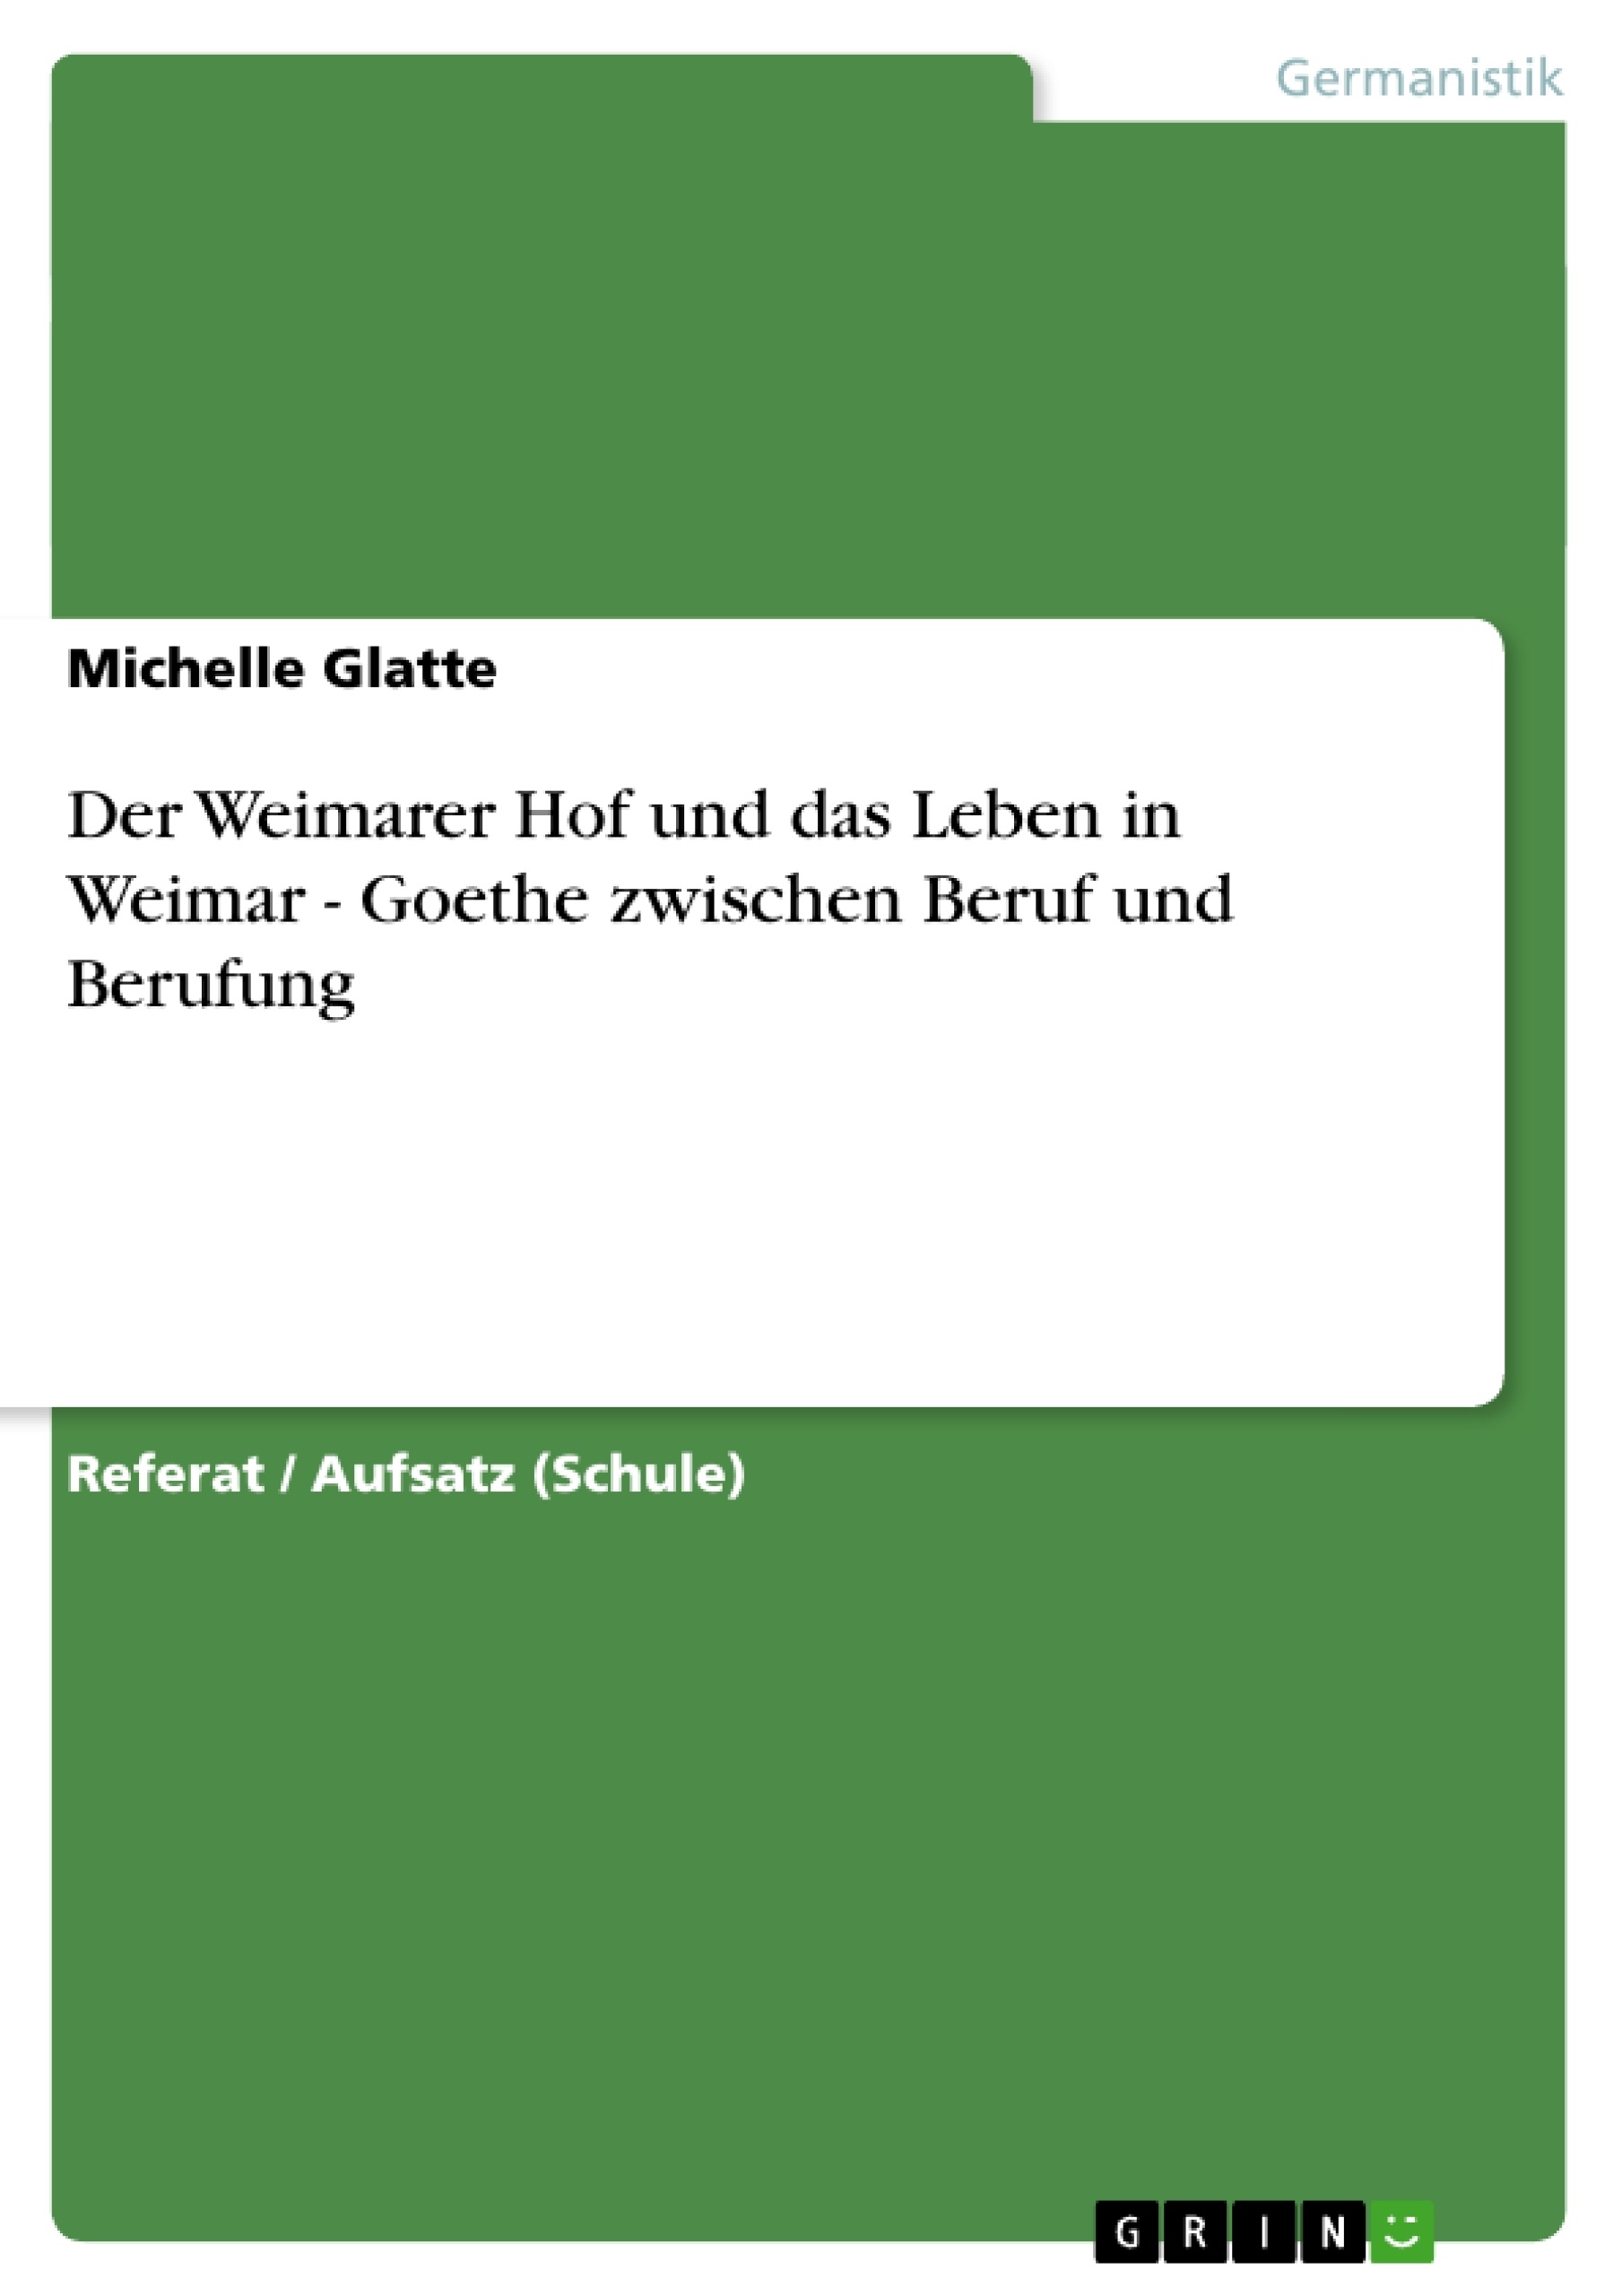 Title: Der Weimarer Hof und das Leben in Weimar - Goethe zwischen Beruf und Berufung